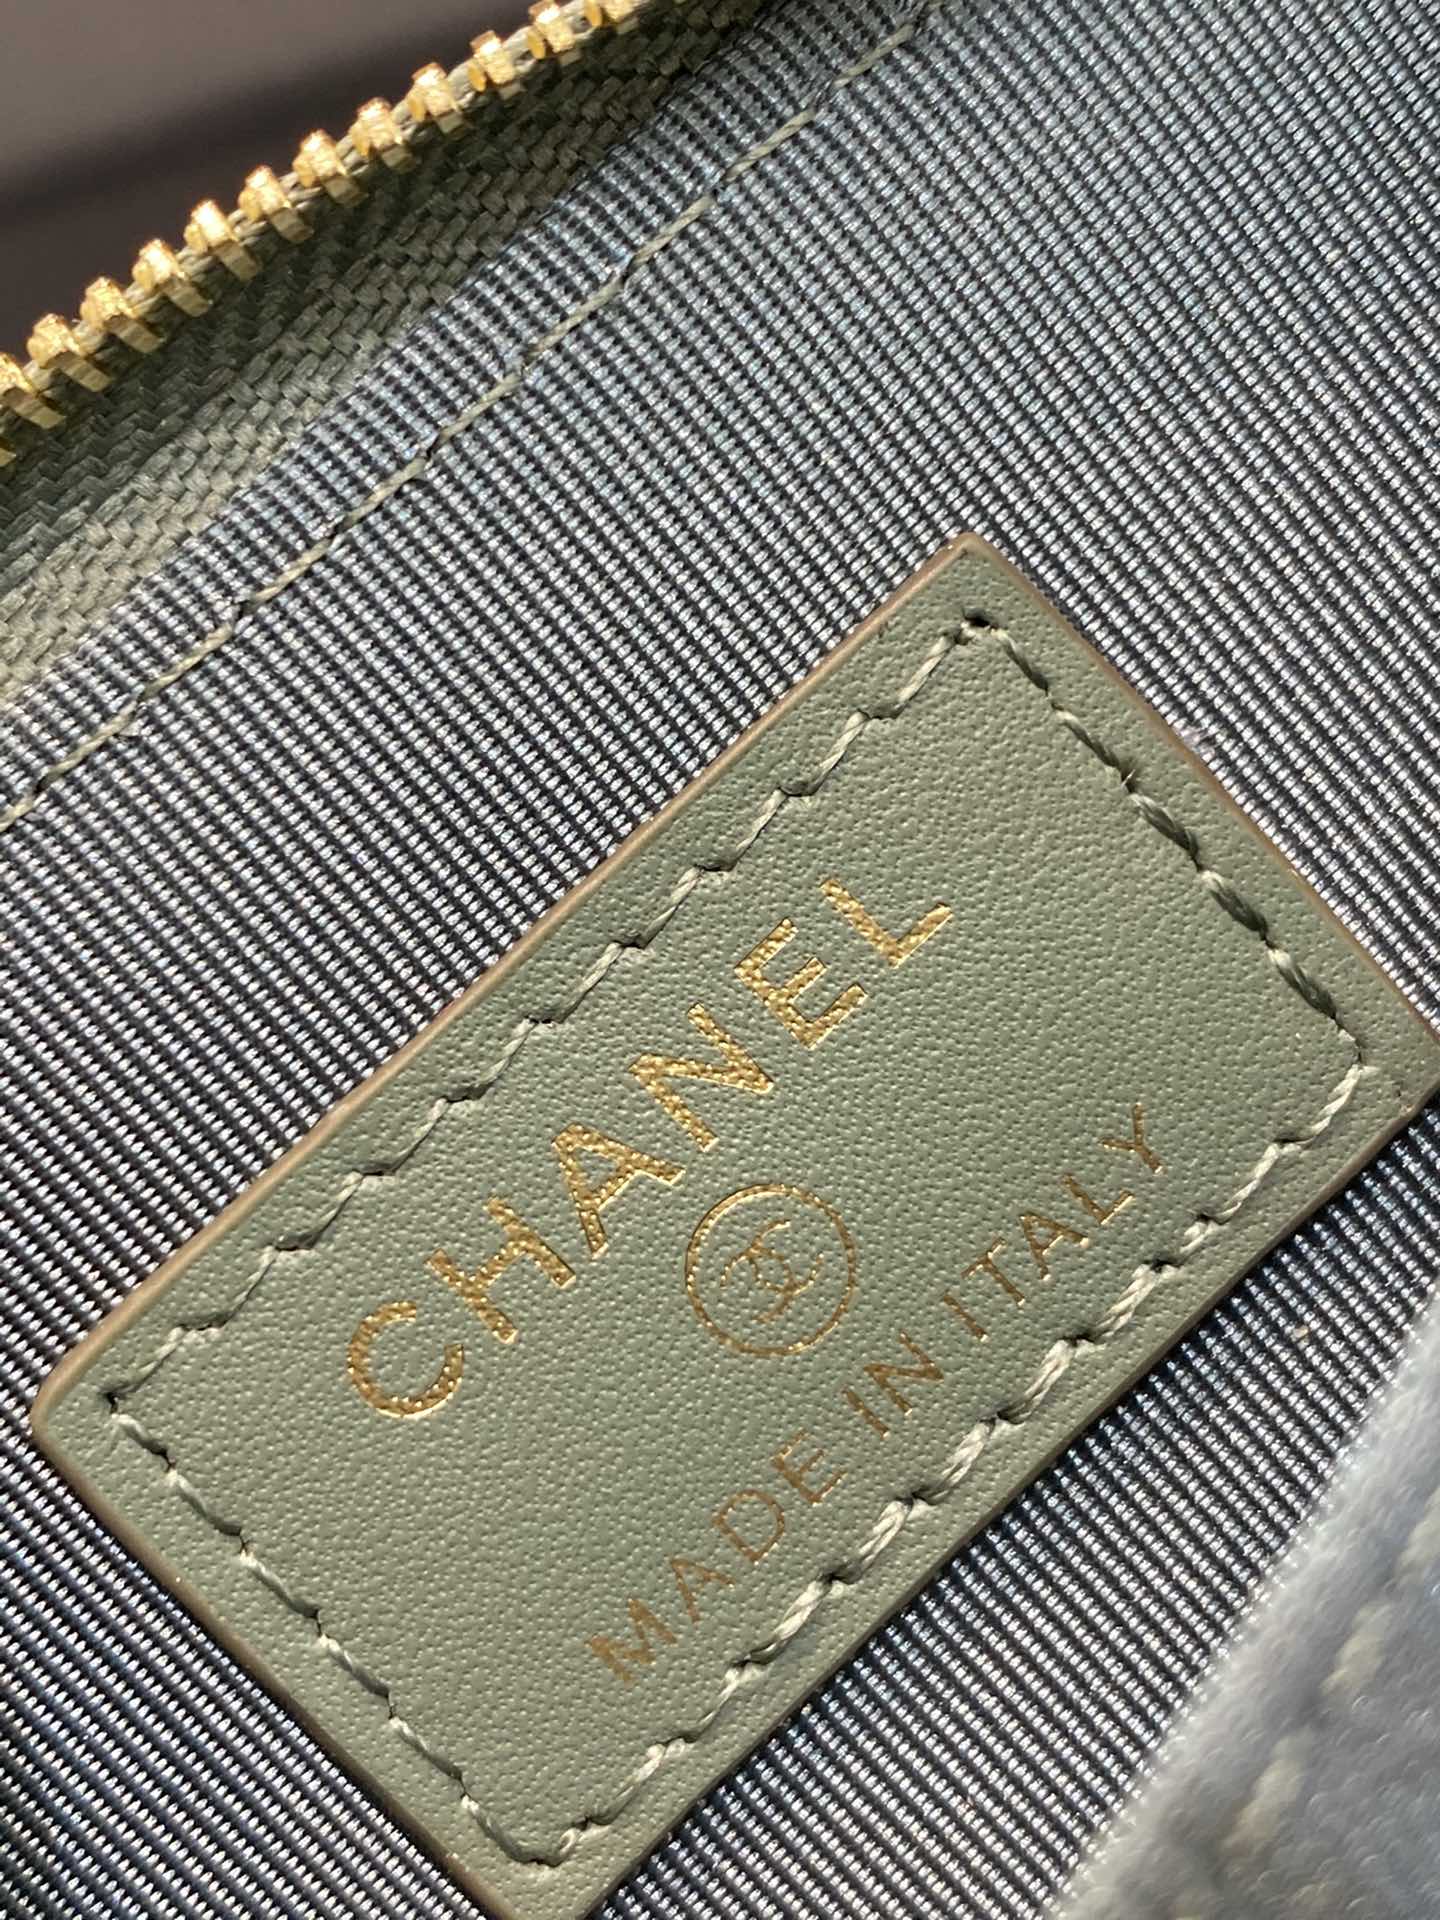 Chanel 小零钱包 高品质 经典菱格设计搭配小羊皮～金扣 7.5×2×11.cm